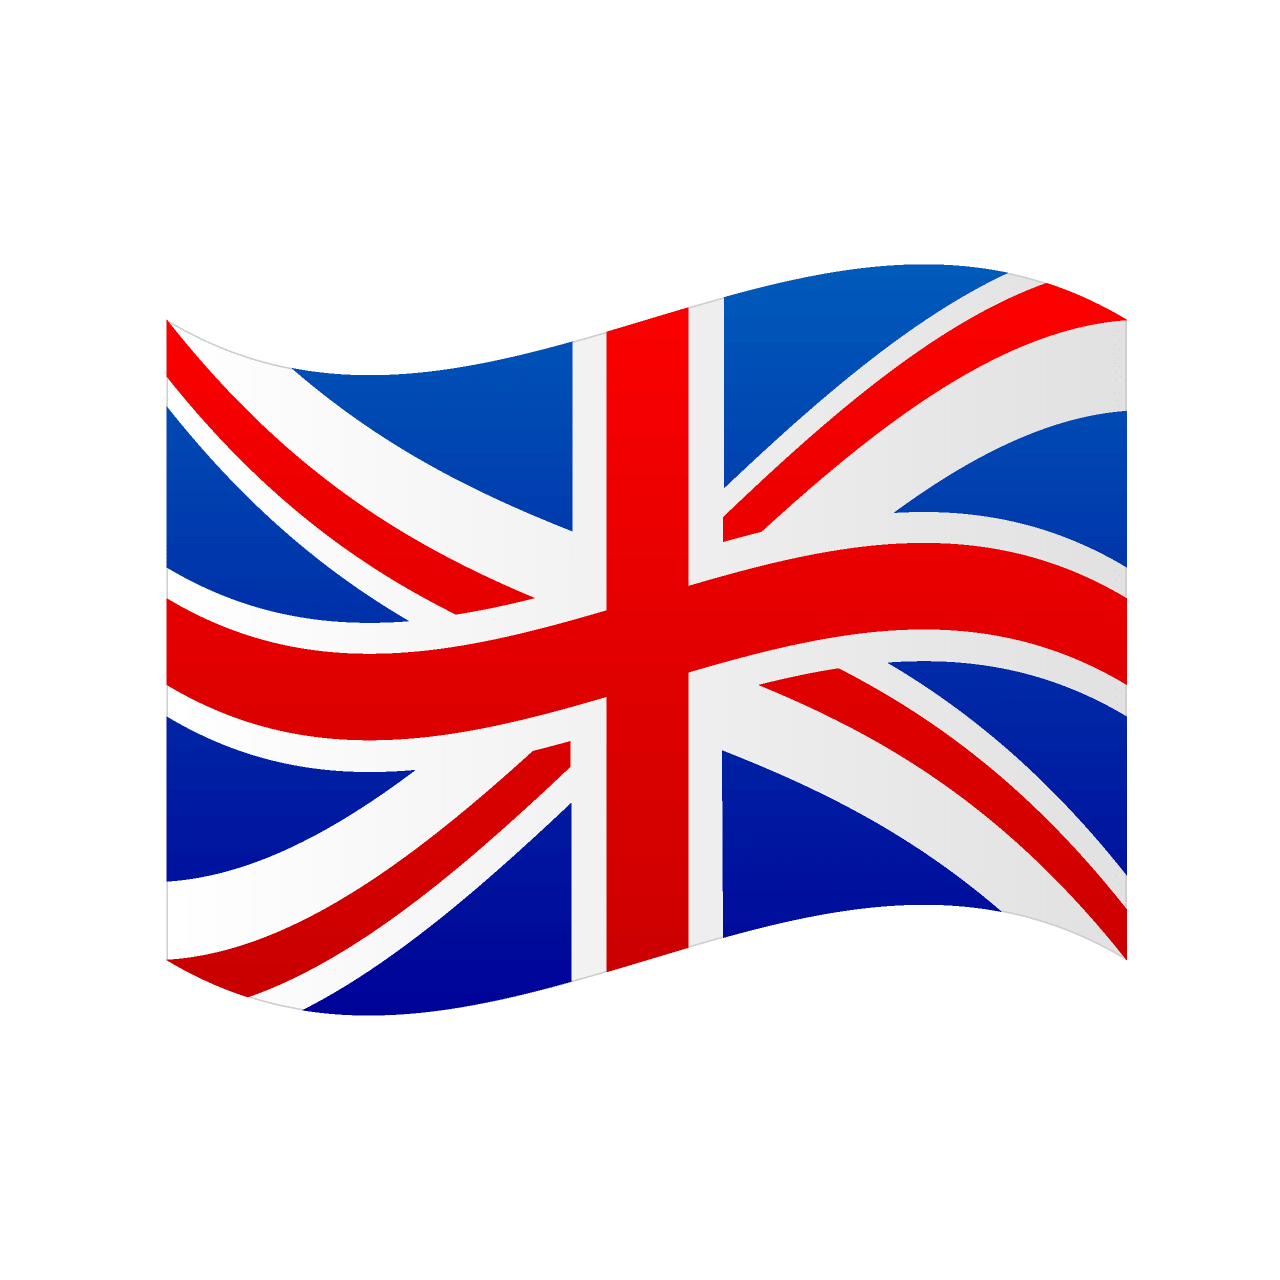 英国国旗的含义是什么？最好在给我发张英国国旗的图来！ Thank!_百度知道